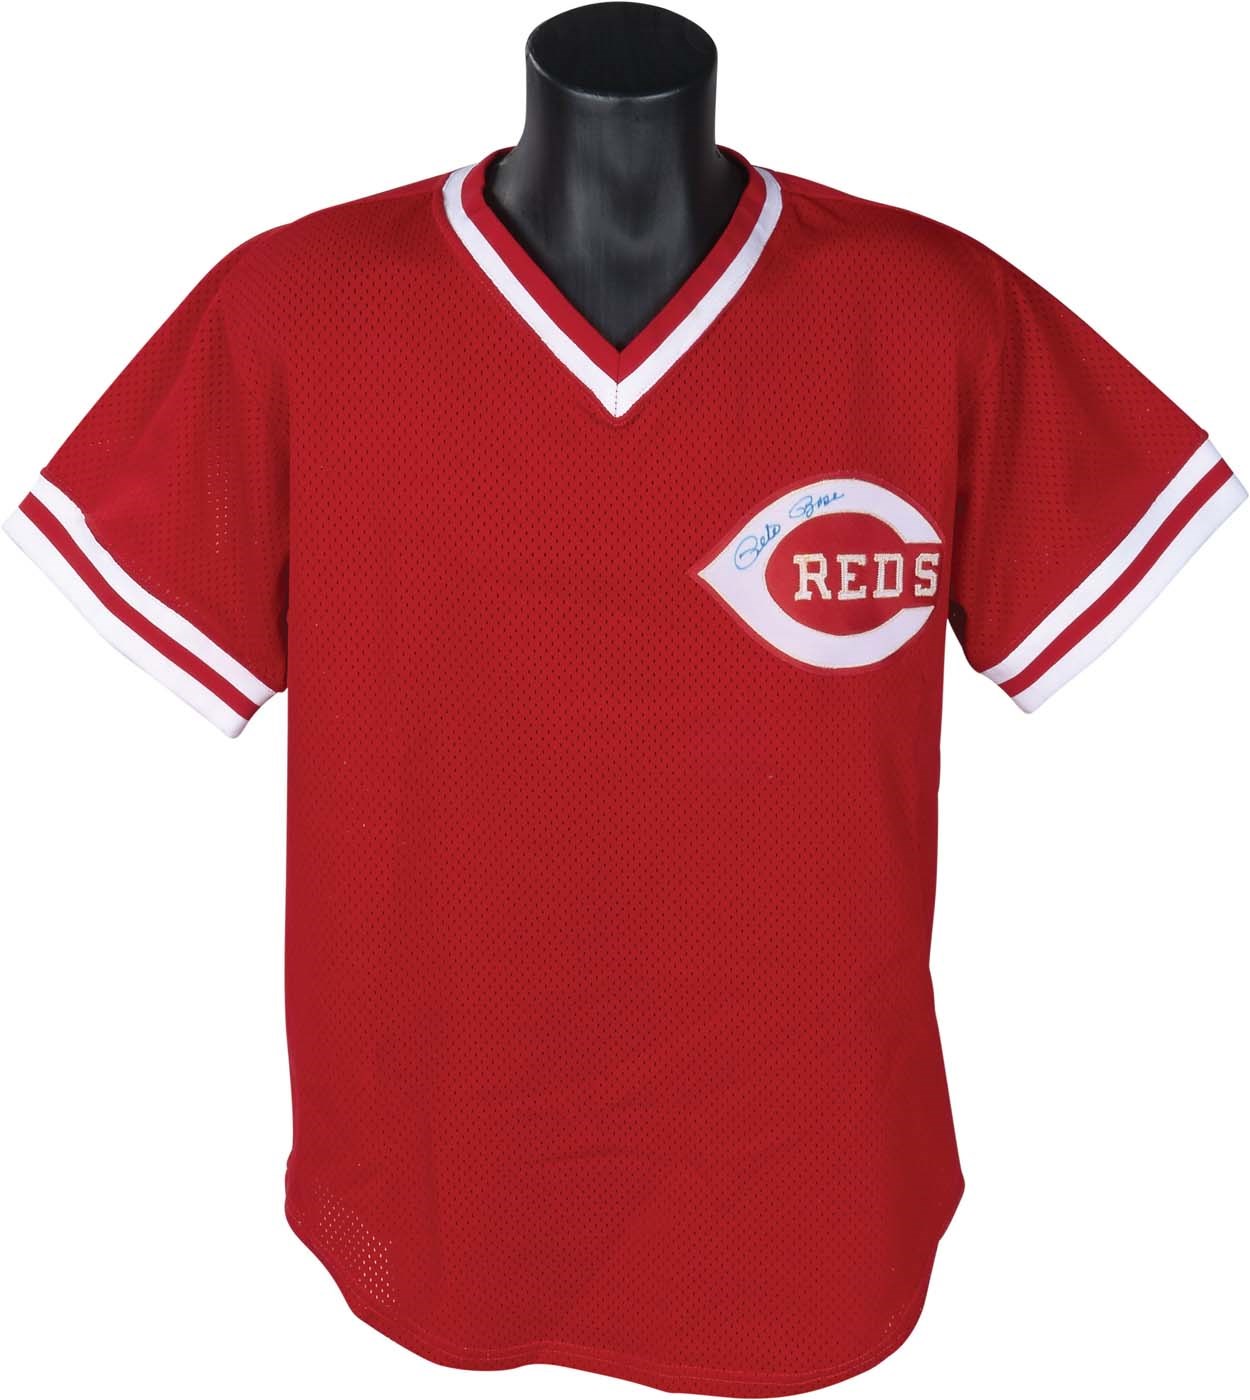 Circa 1984 Pete Rose Cincinnati Reds Batting Practice Jersey